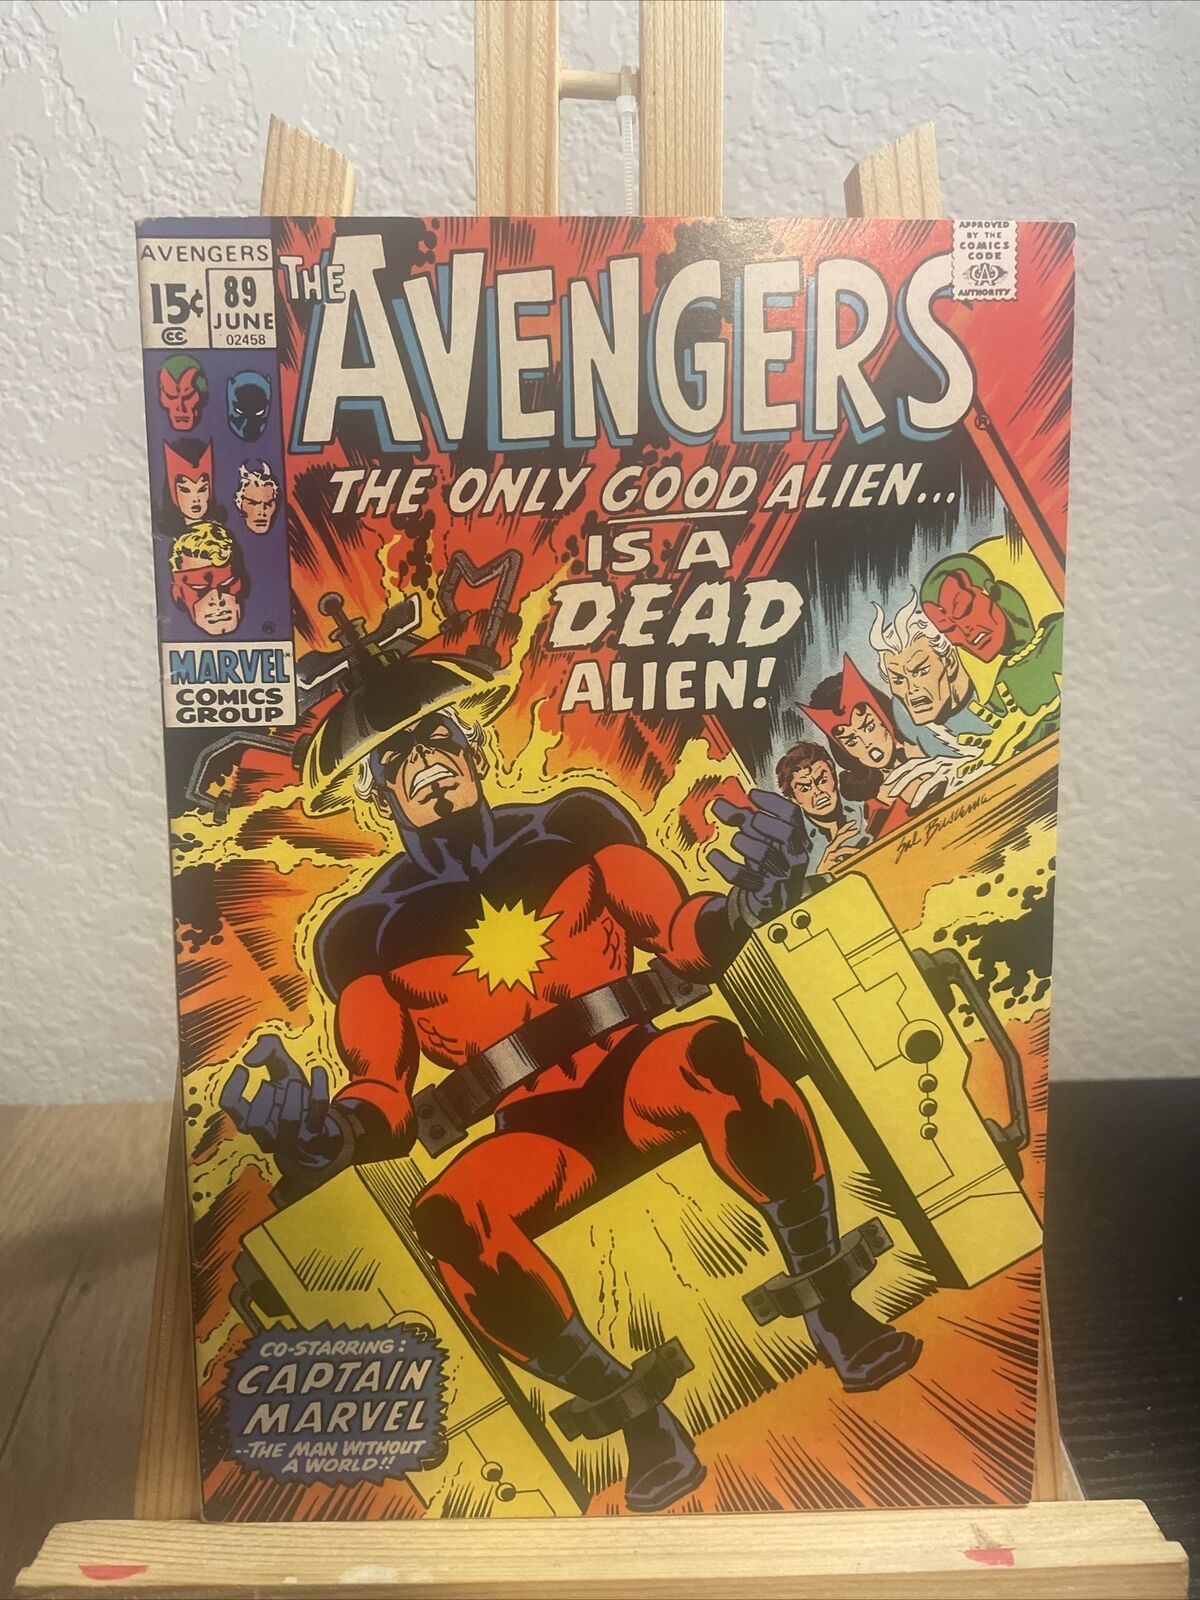 Avengers #89 The Only Good Alien Captain Marvel Sal Buscema Cover Marvel 1971